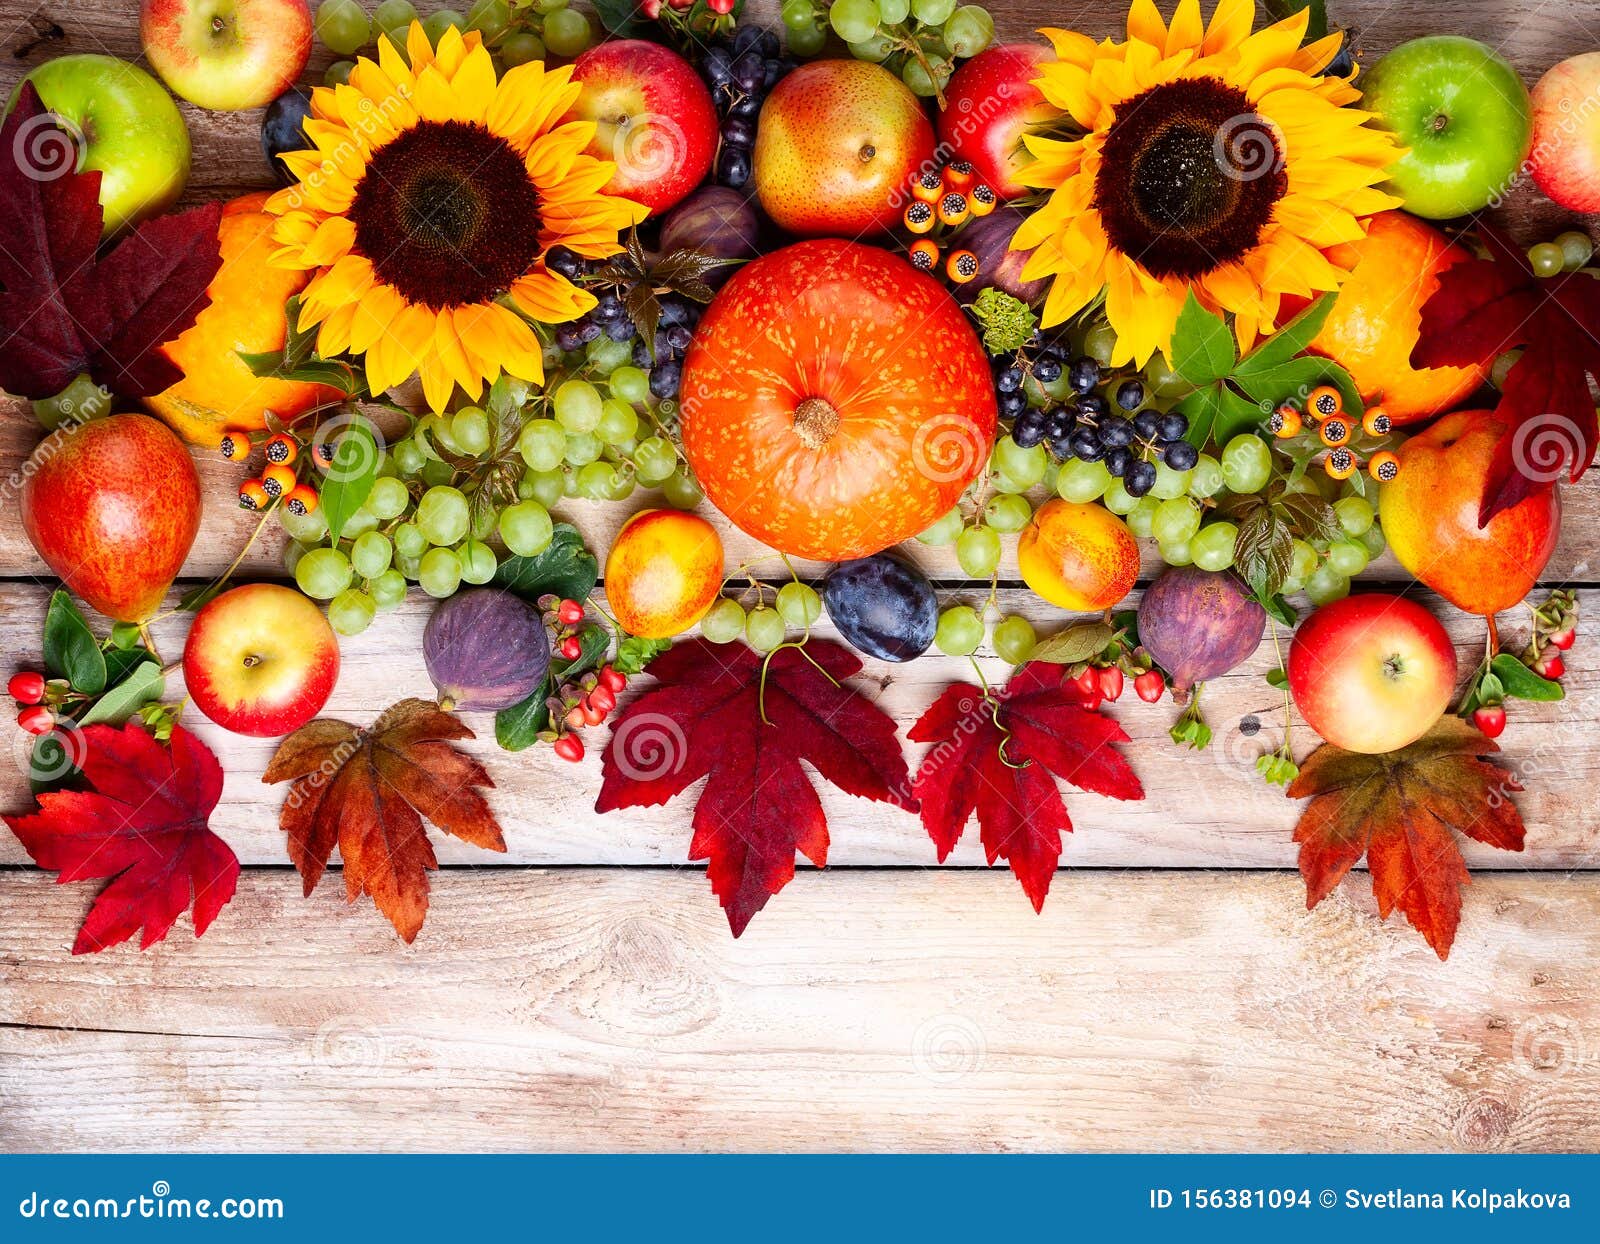 frutta d'acero Anelli portatovaglioli autunnali stile 2-6 pezzi zucca del Ringraziamento autunnale vacanze cene e feste 